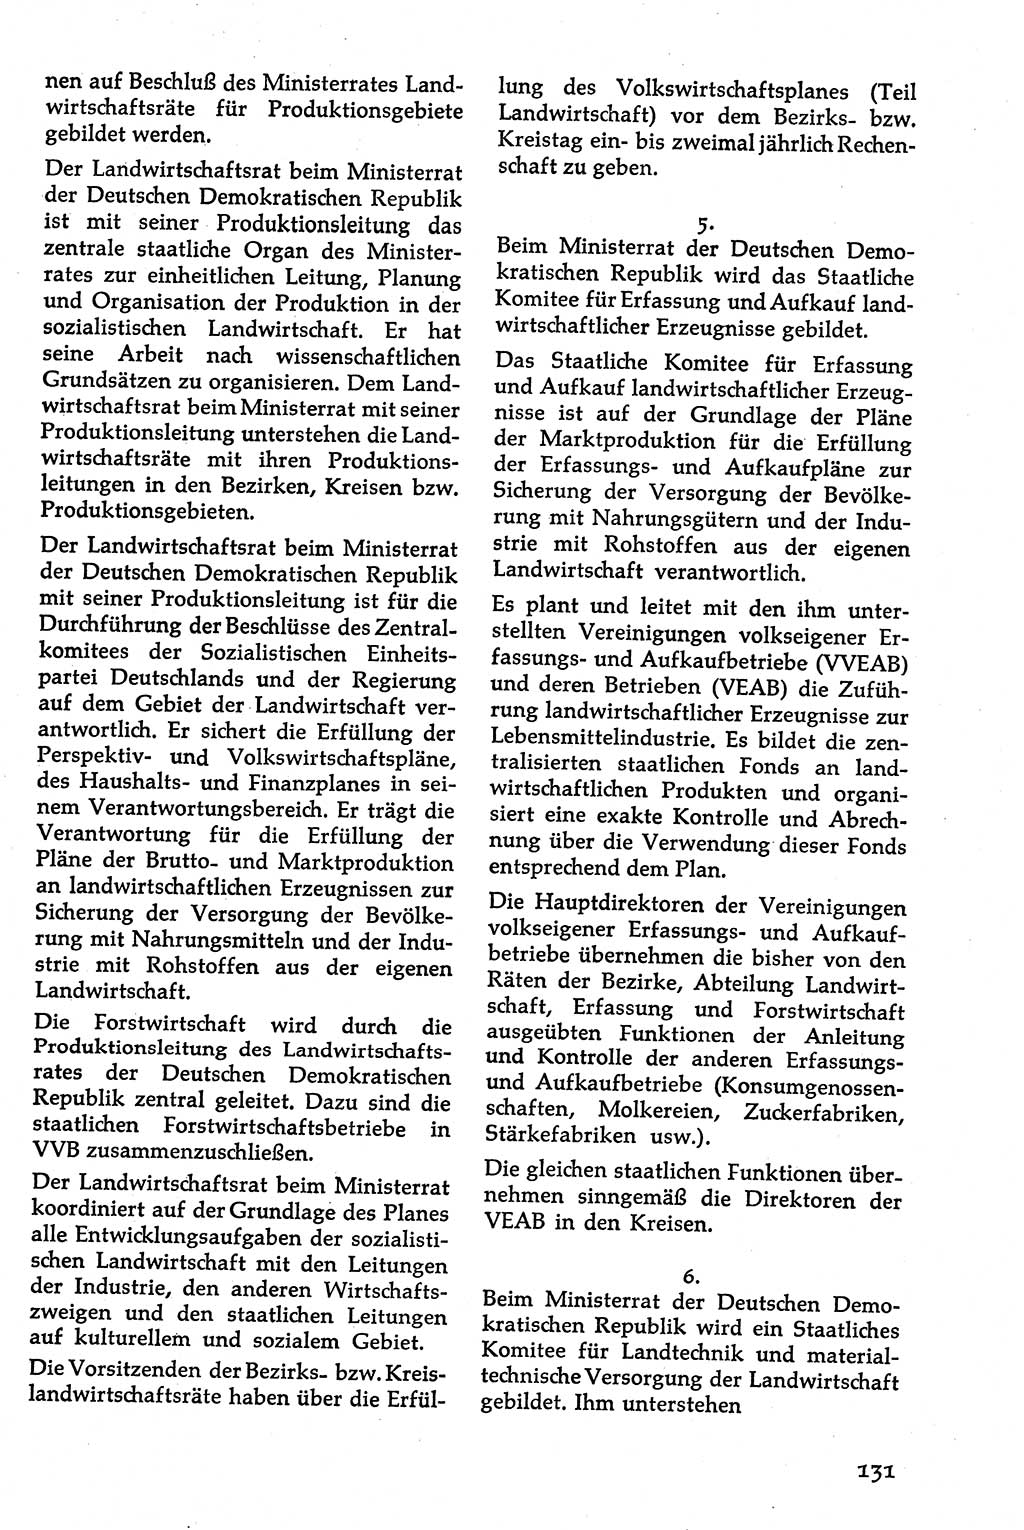 Volksdemokratische Ordnung in Mitteldeutschland [Deutsche Demokratische Republik (DDR)], Texte zur verfassungsrechtlichen Situation 1963, Seite 131 (Volksdem. Ordn. Md. DDR 1963, S. 131)